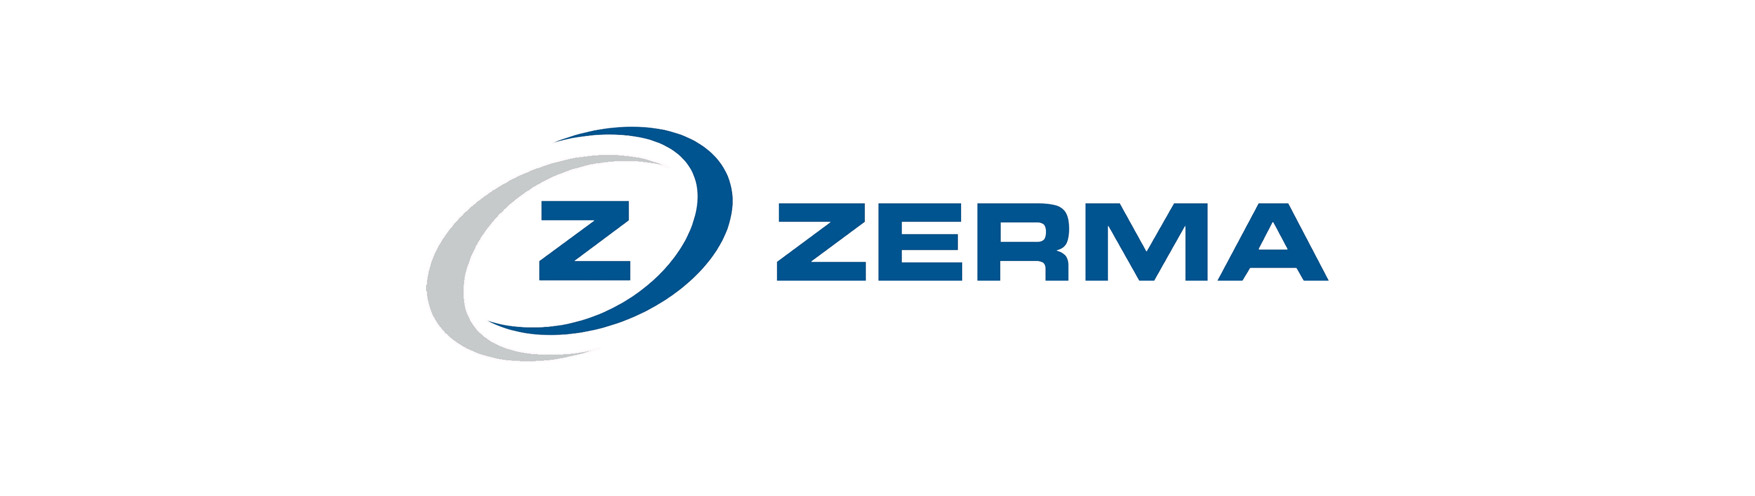 zerma-logo-3 (small) 